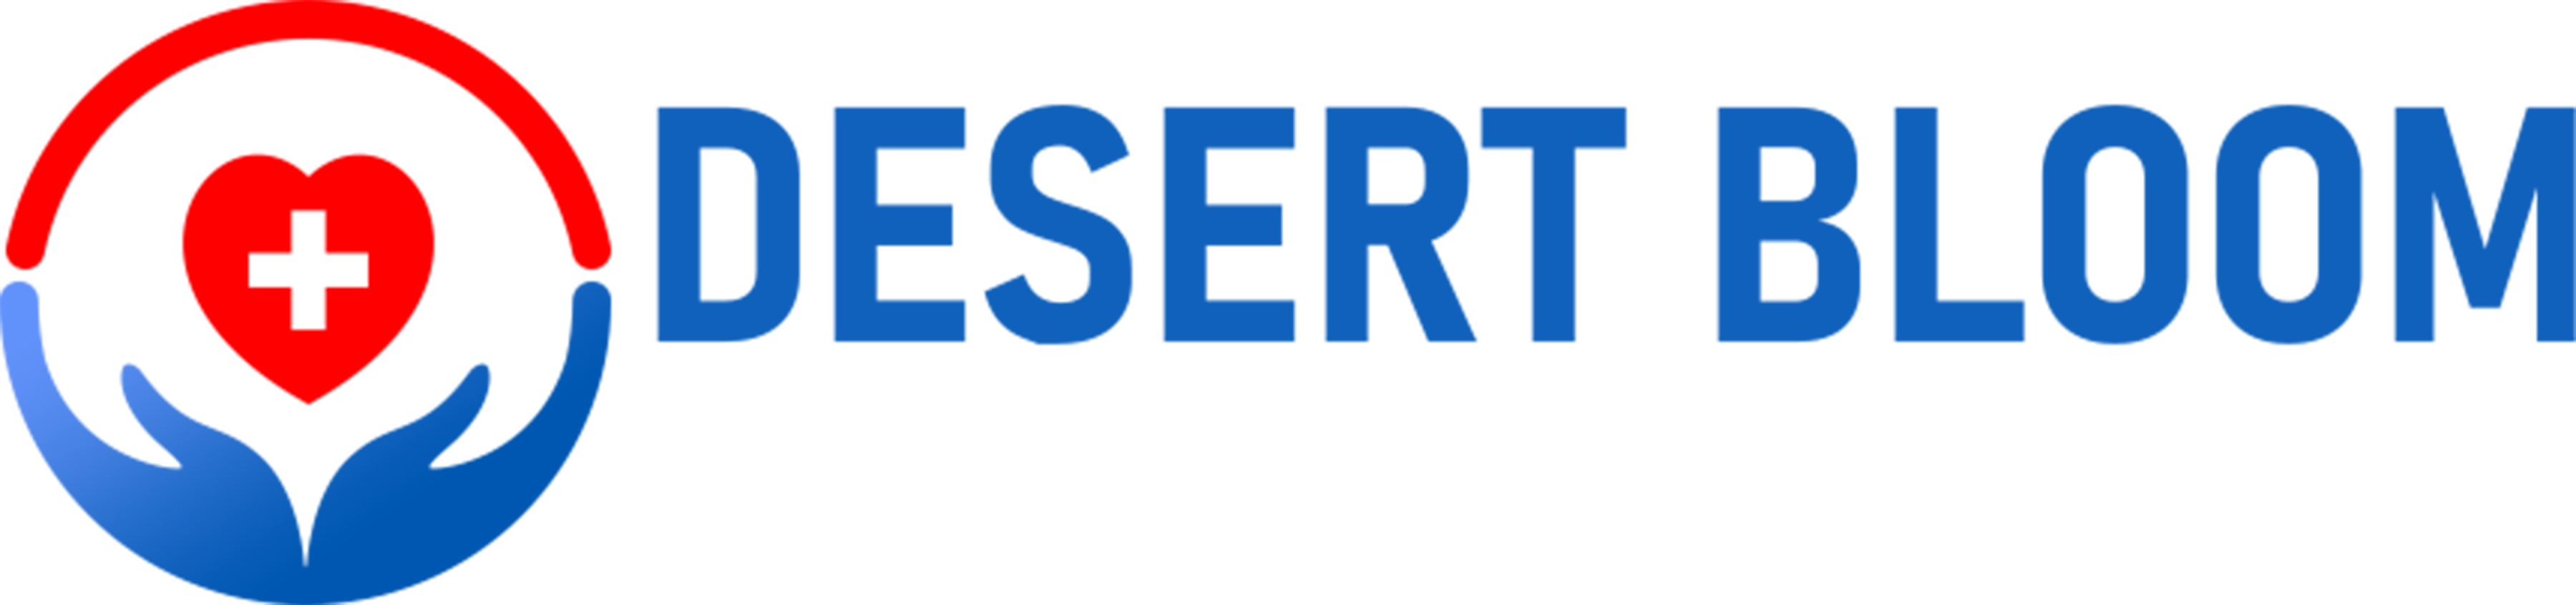 desert-bloom-logo2